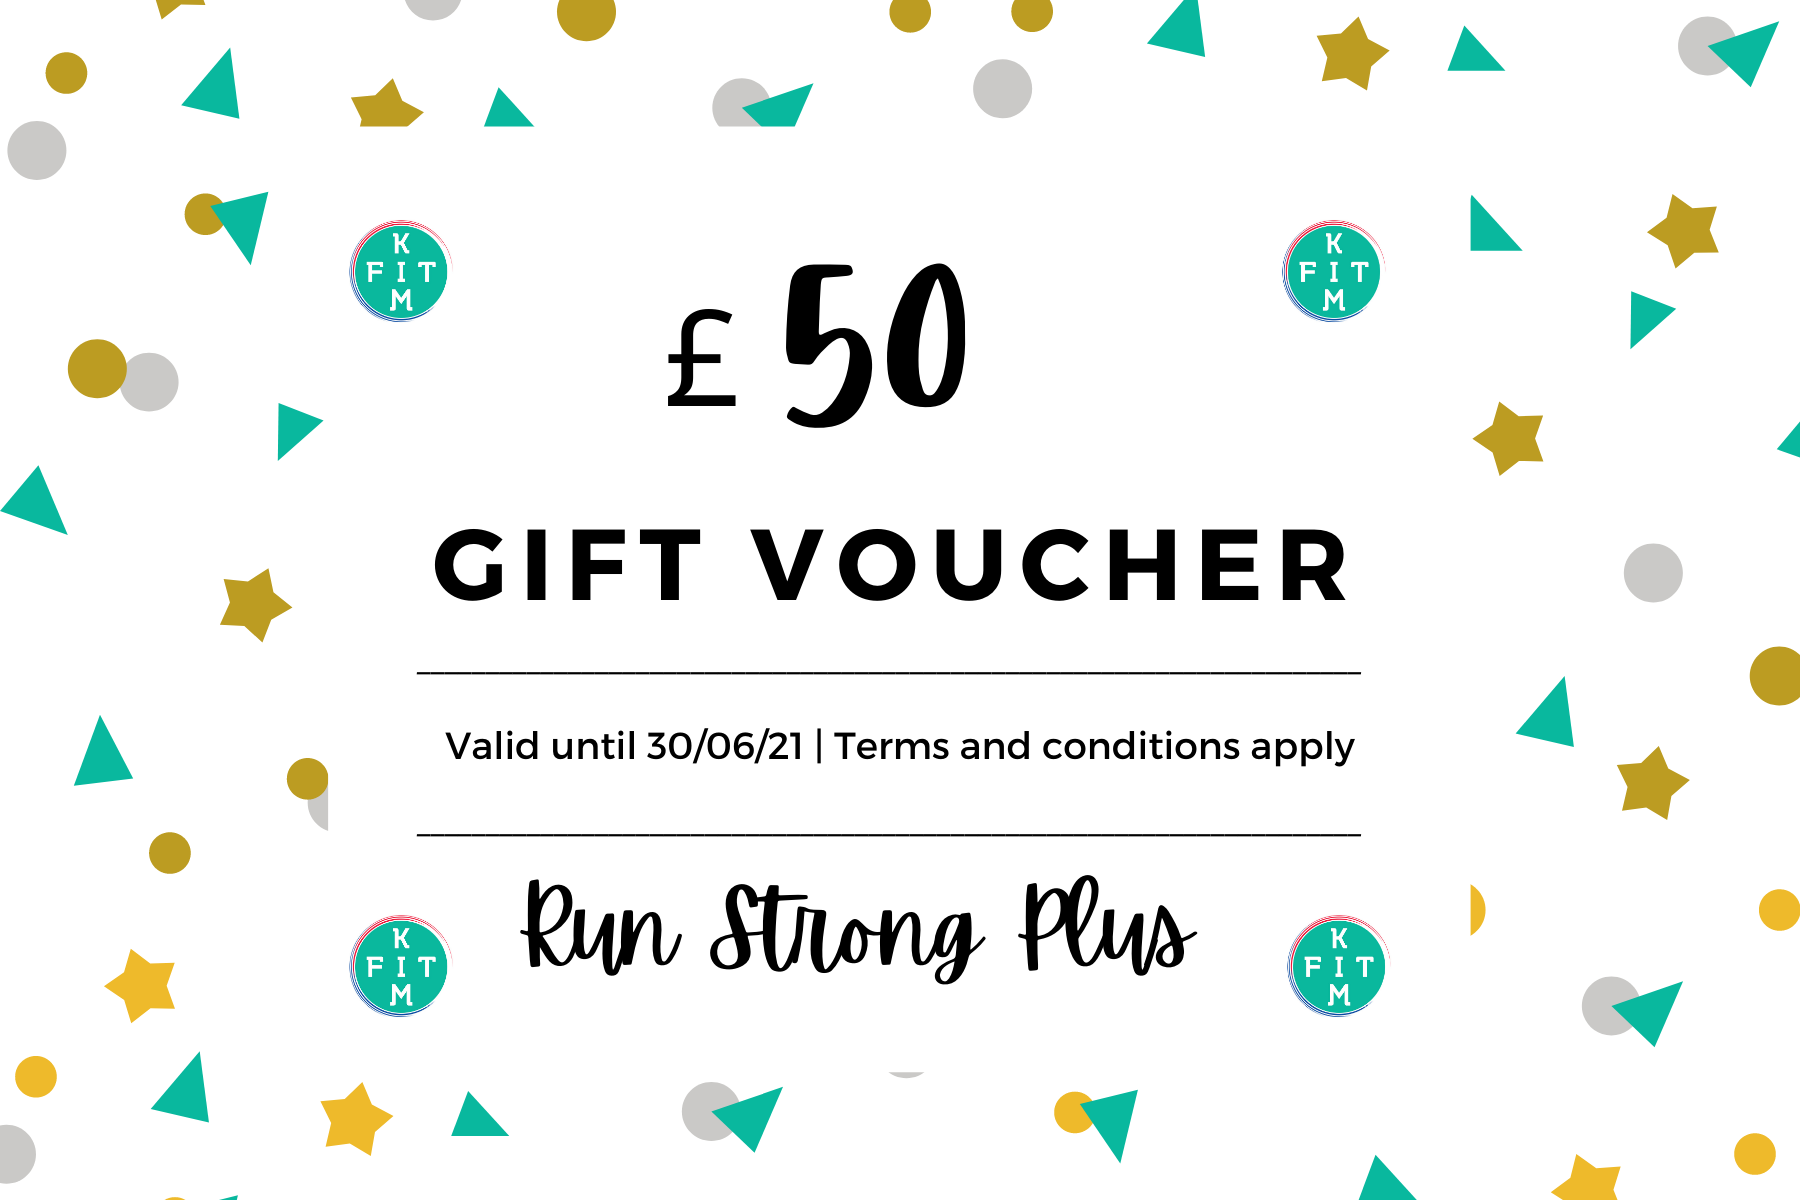 Gift Voucher £50 – KimFit Shop